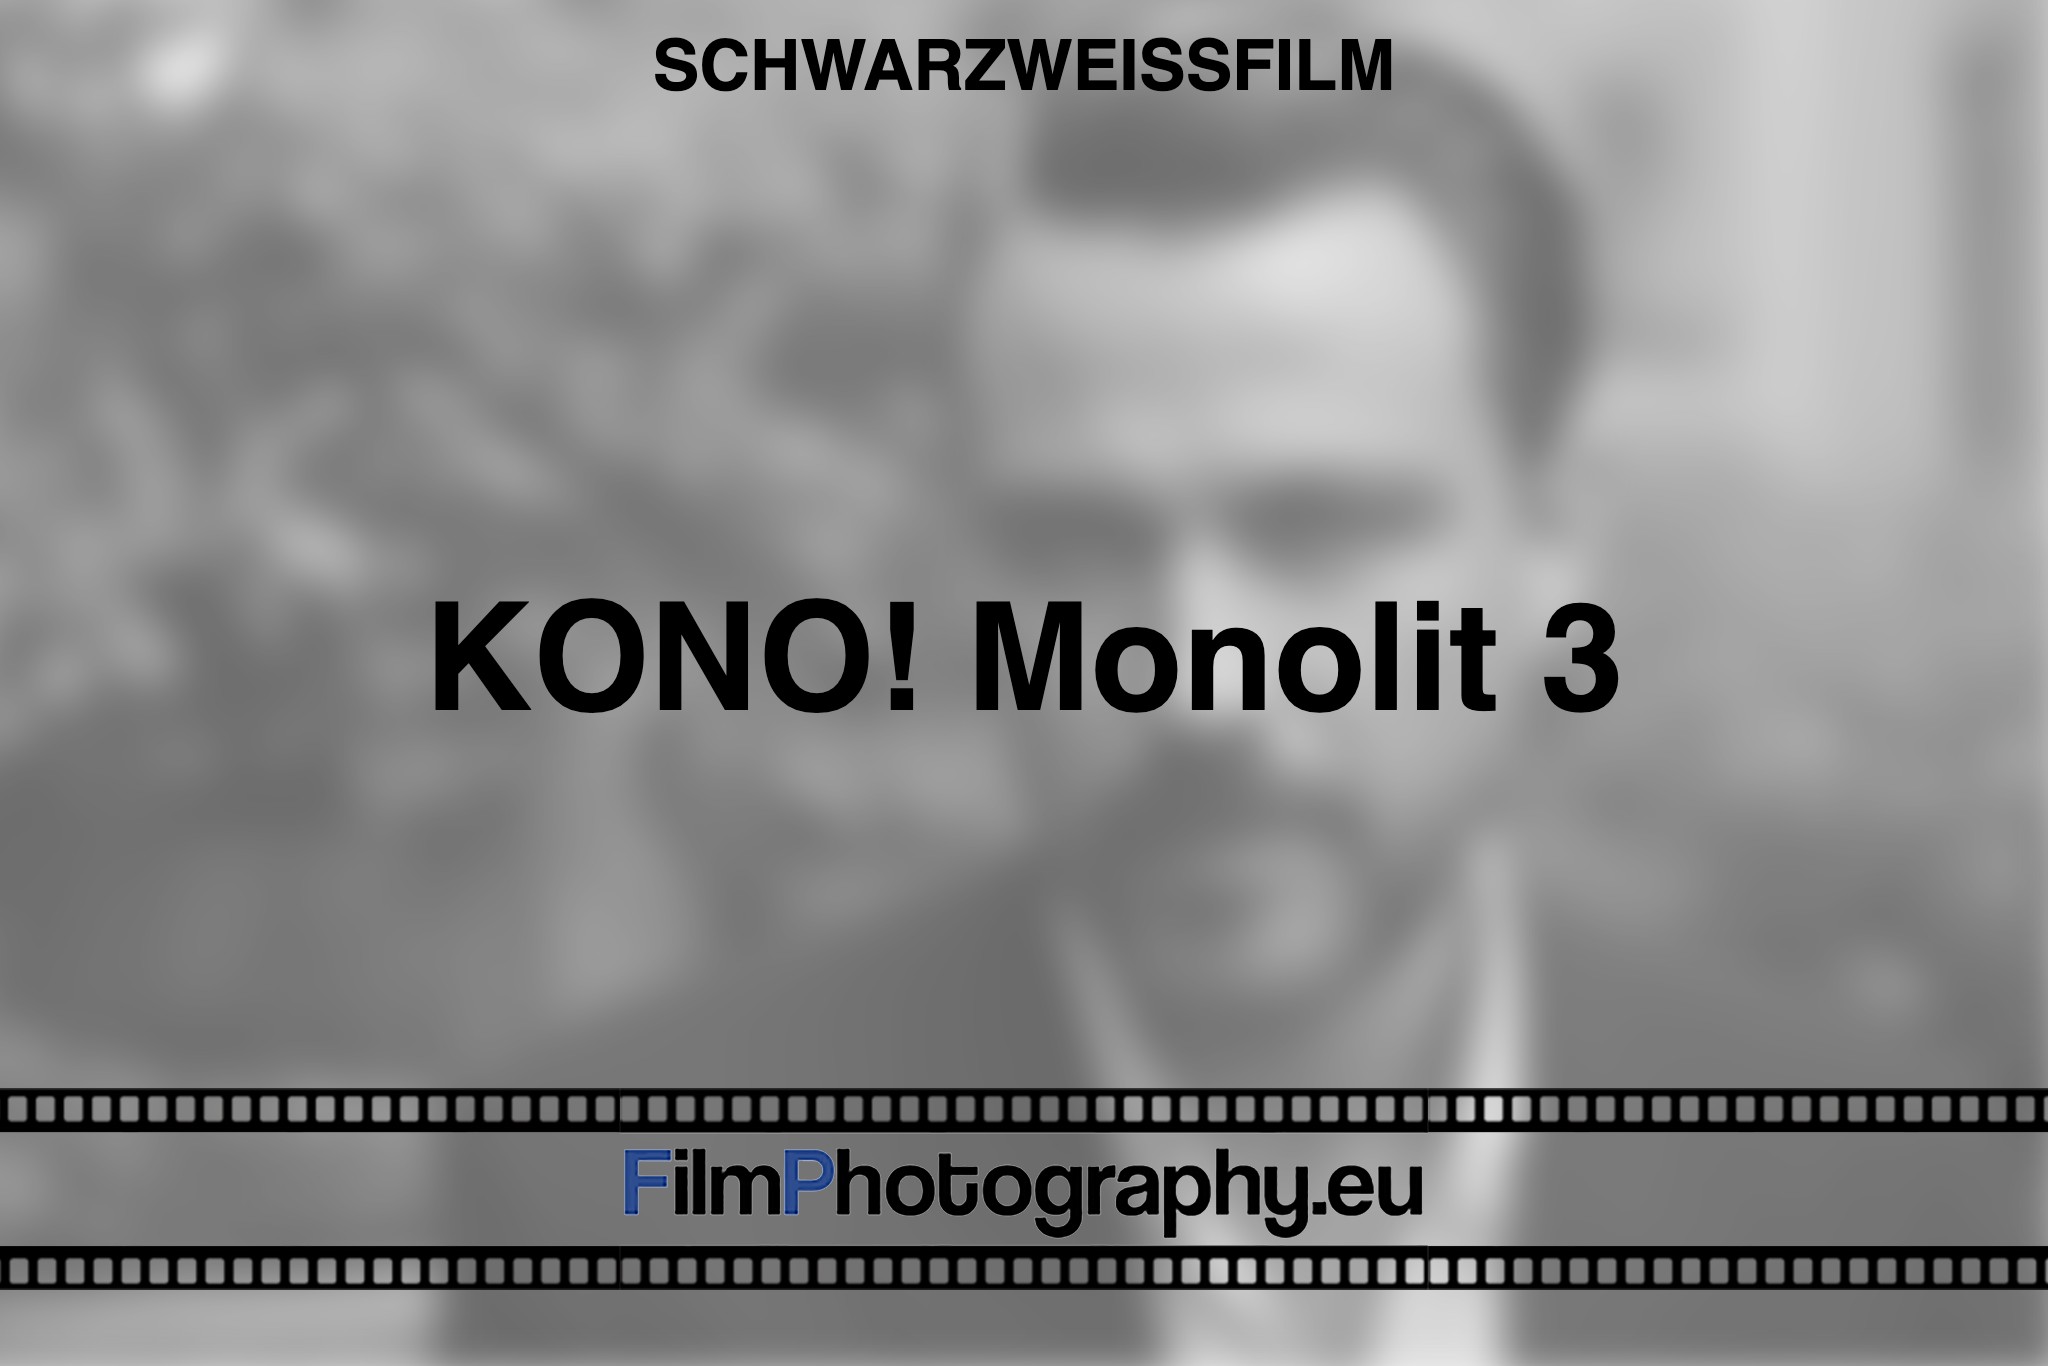 kono-monolit-3-schwarzweißfilm-bnv